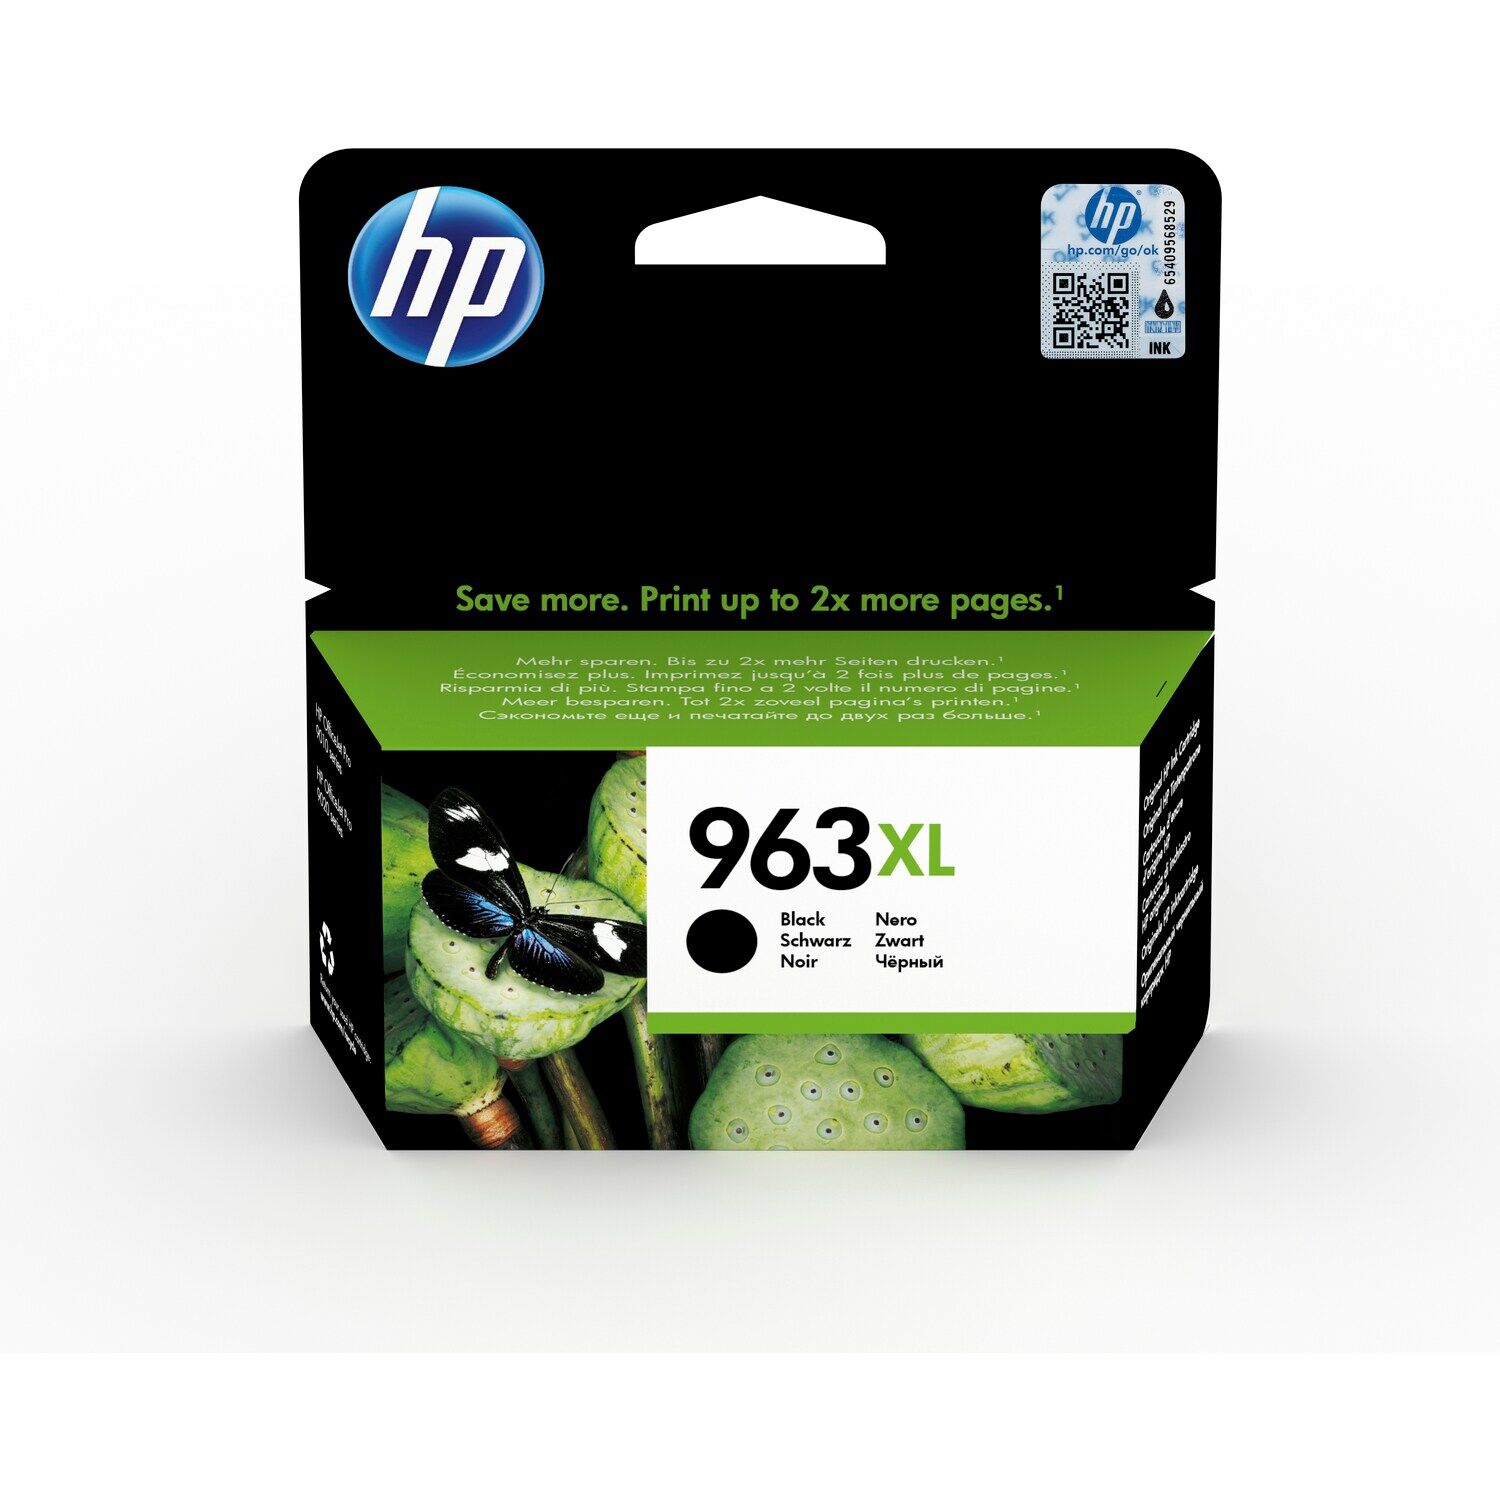 Картридж для печати HP Картридж HP 963Xl 3JA30AE вид печати струйный, цвет Черный, емкость 48мл.